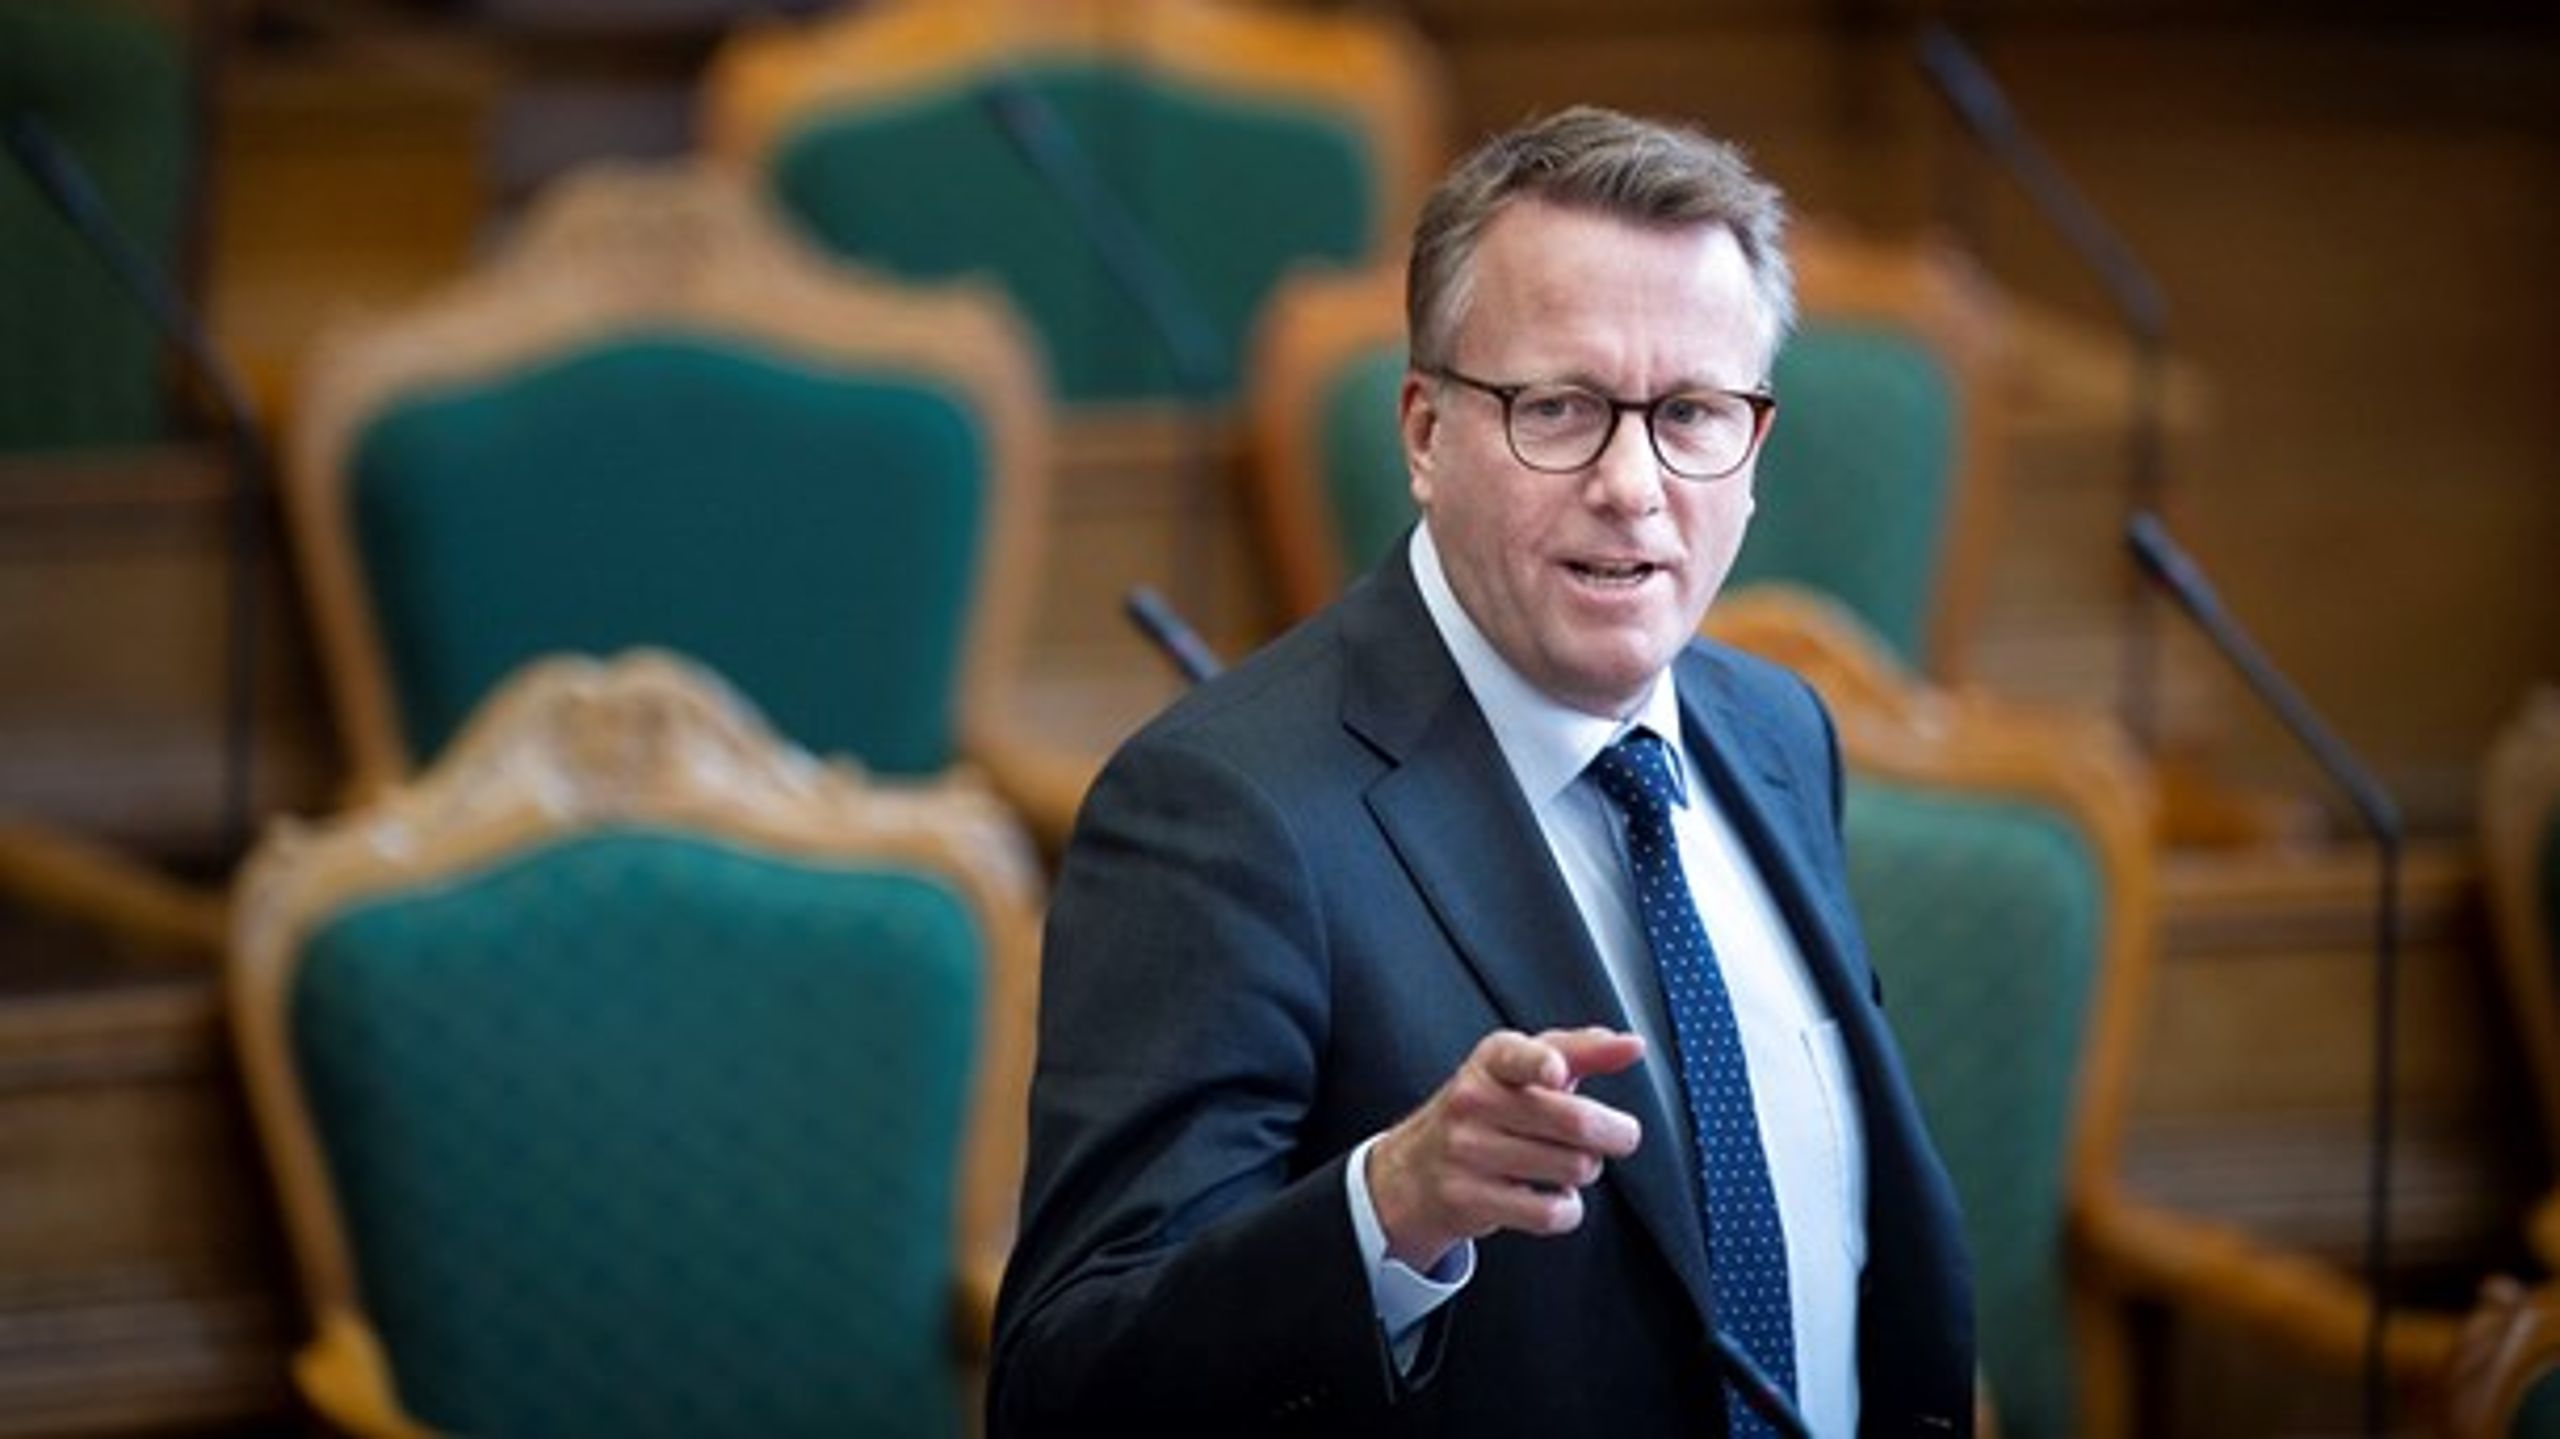 Skatteminister Morten Bødskov skal både i salen med et lovforslag om overskudsvarme og i samråd om dyrere afgifter på plastikposer.